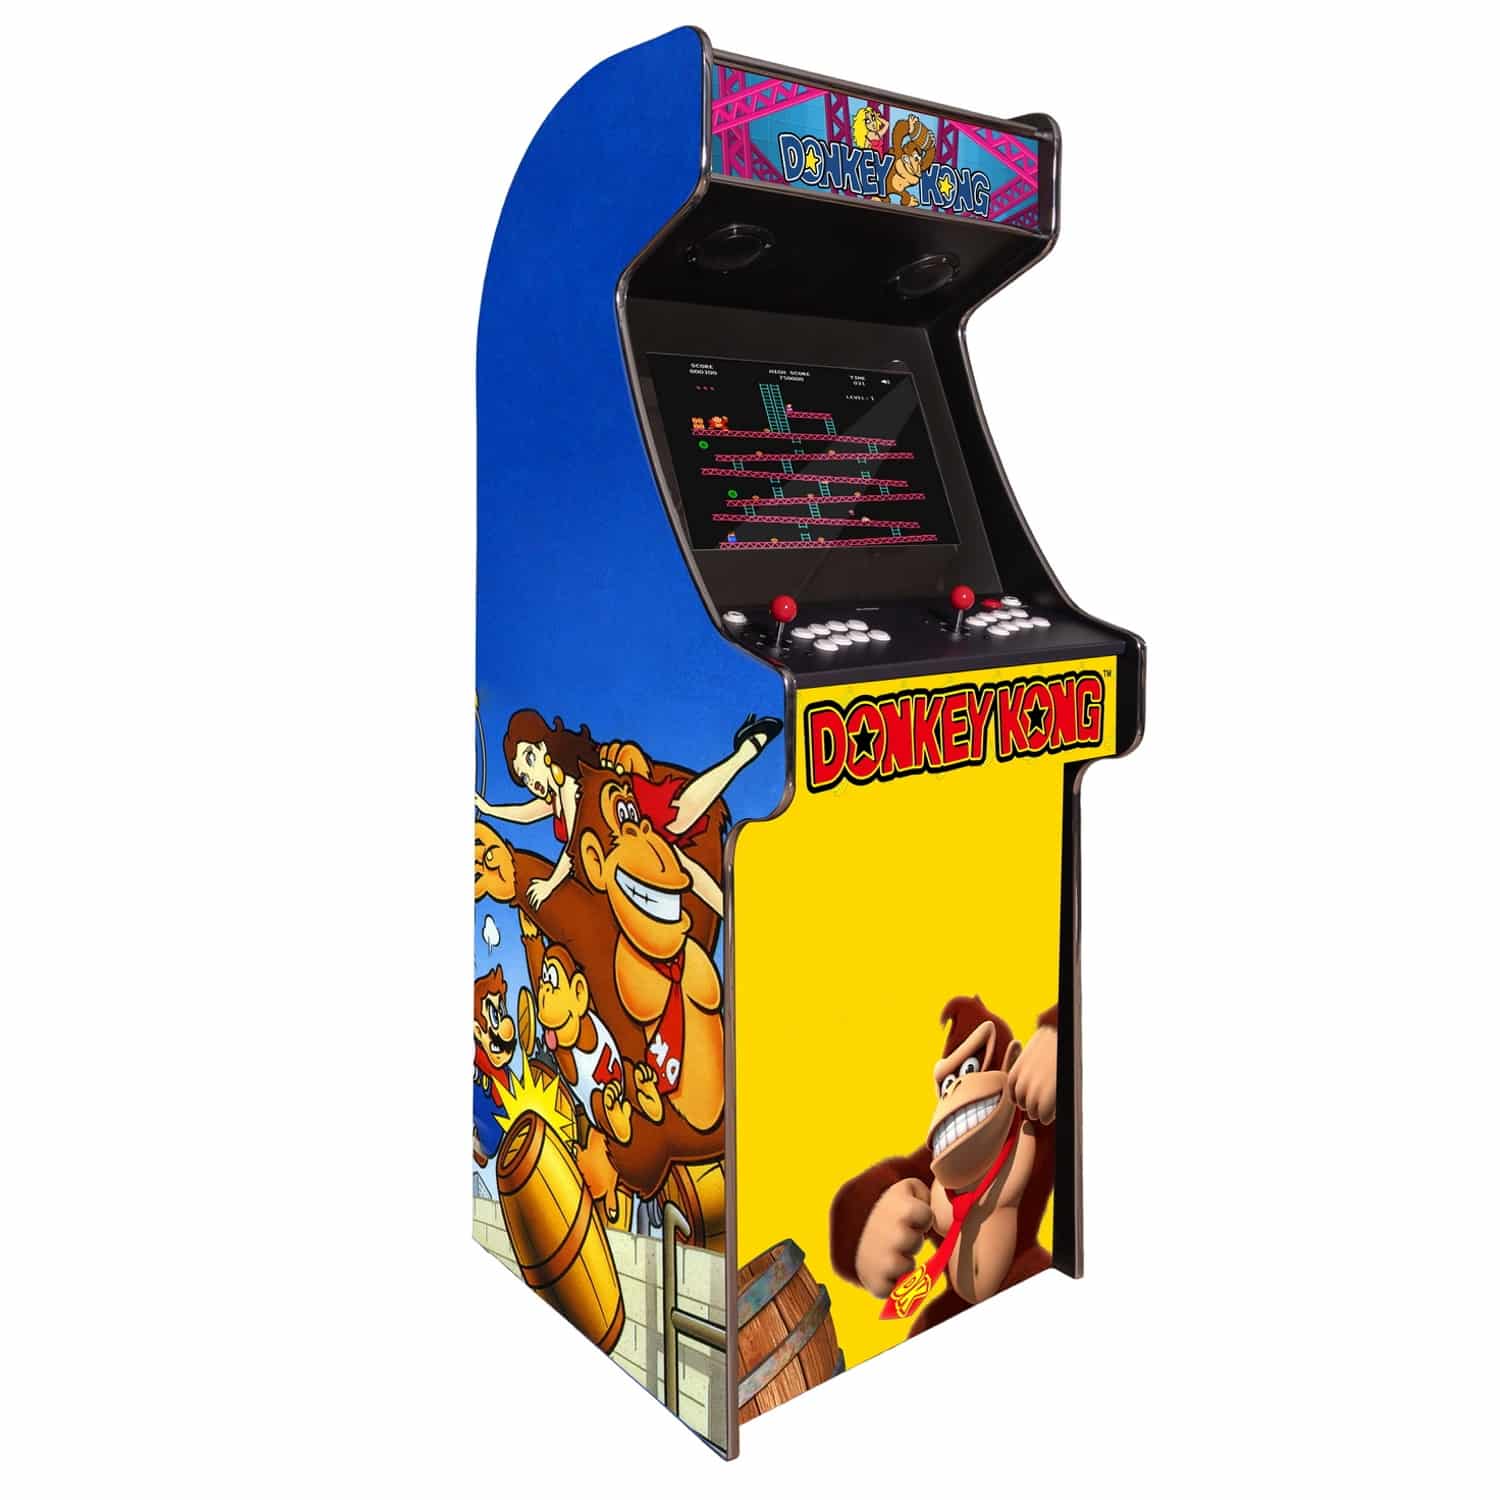 arcade machine borne born jeux cafe anciens retro recalbox neuve moderne hdmi pas cher vente achat prix france belgique donkeykong - Accueil